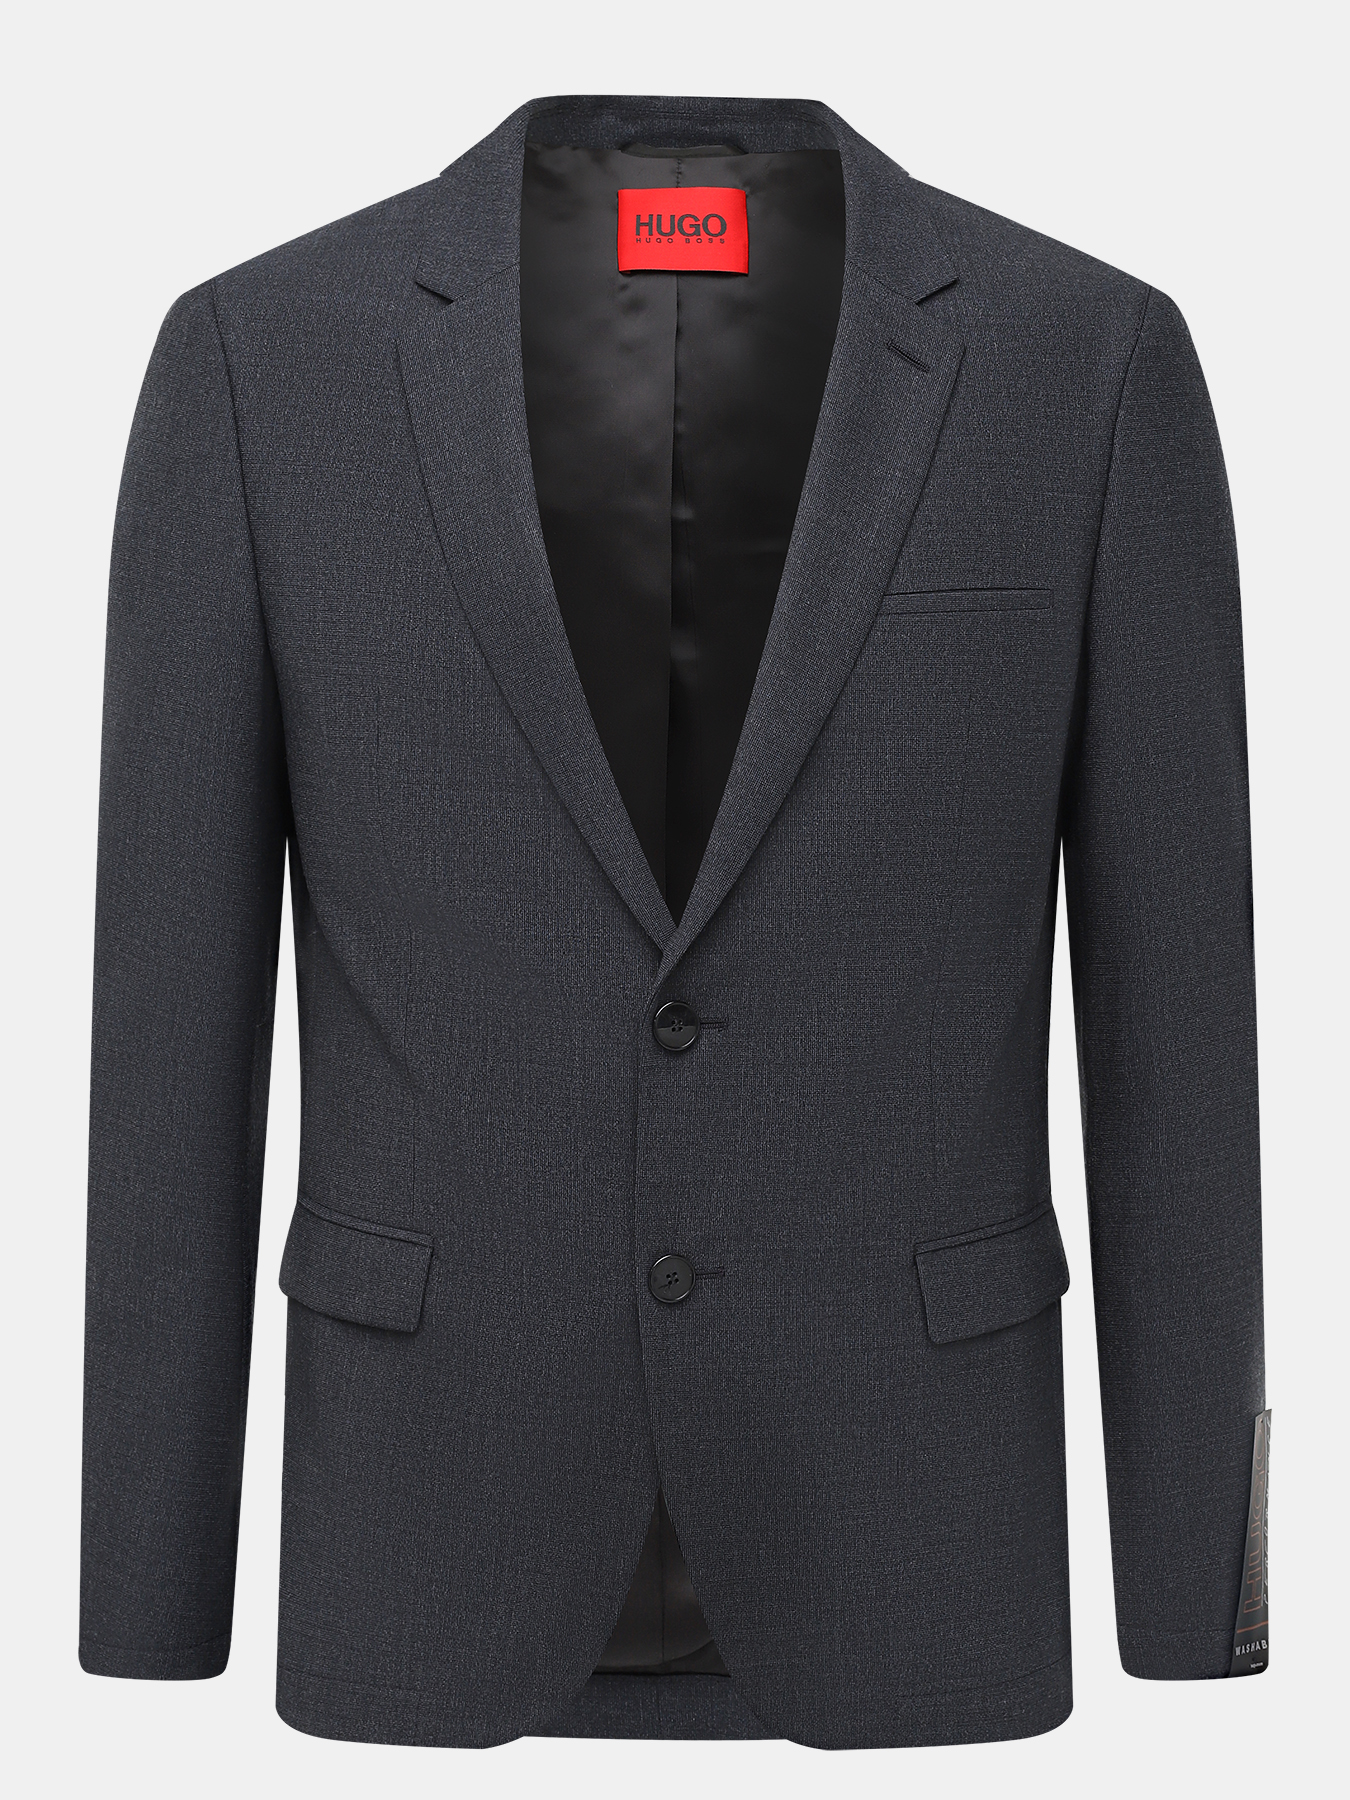 Пиджак Anfred HUGO 398641-026, цвет темно-серый, размер 50